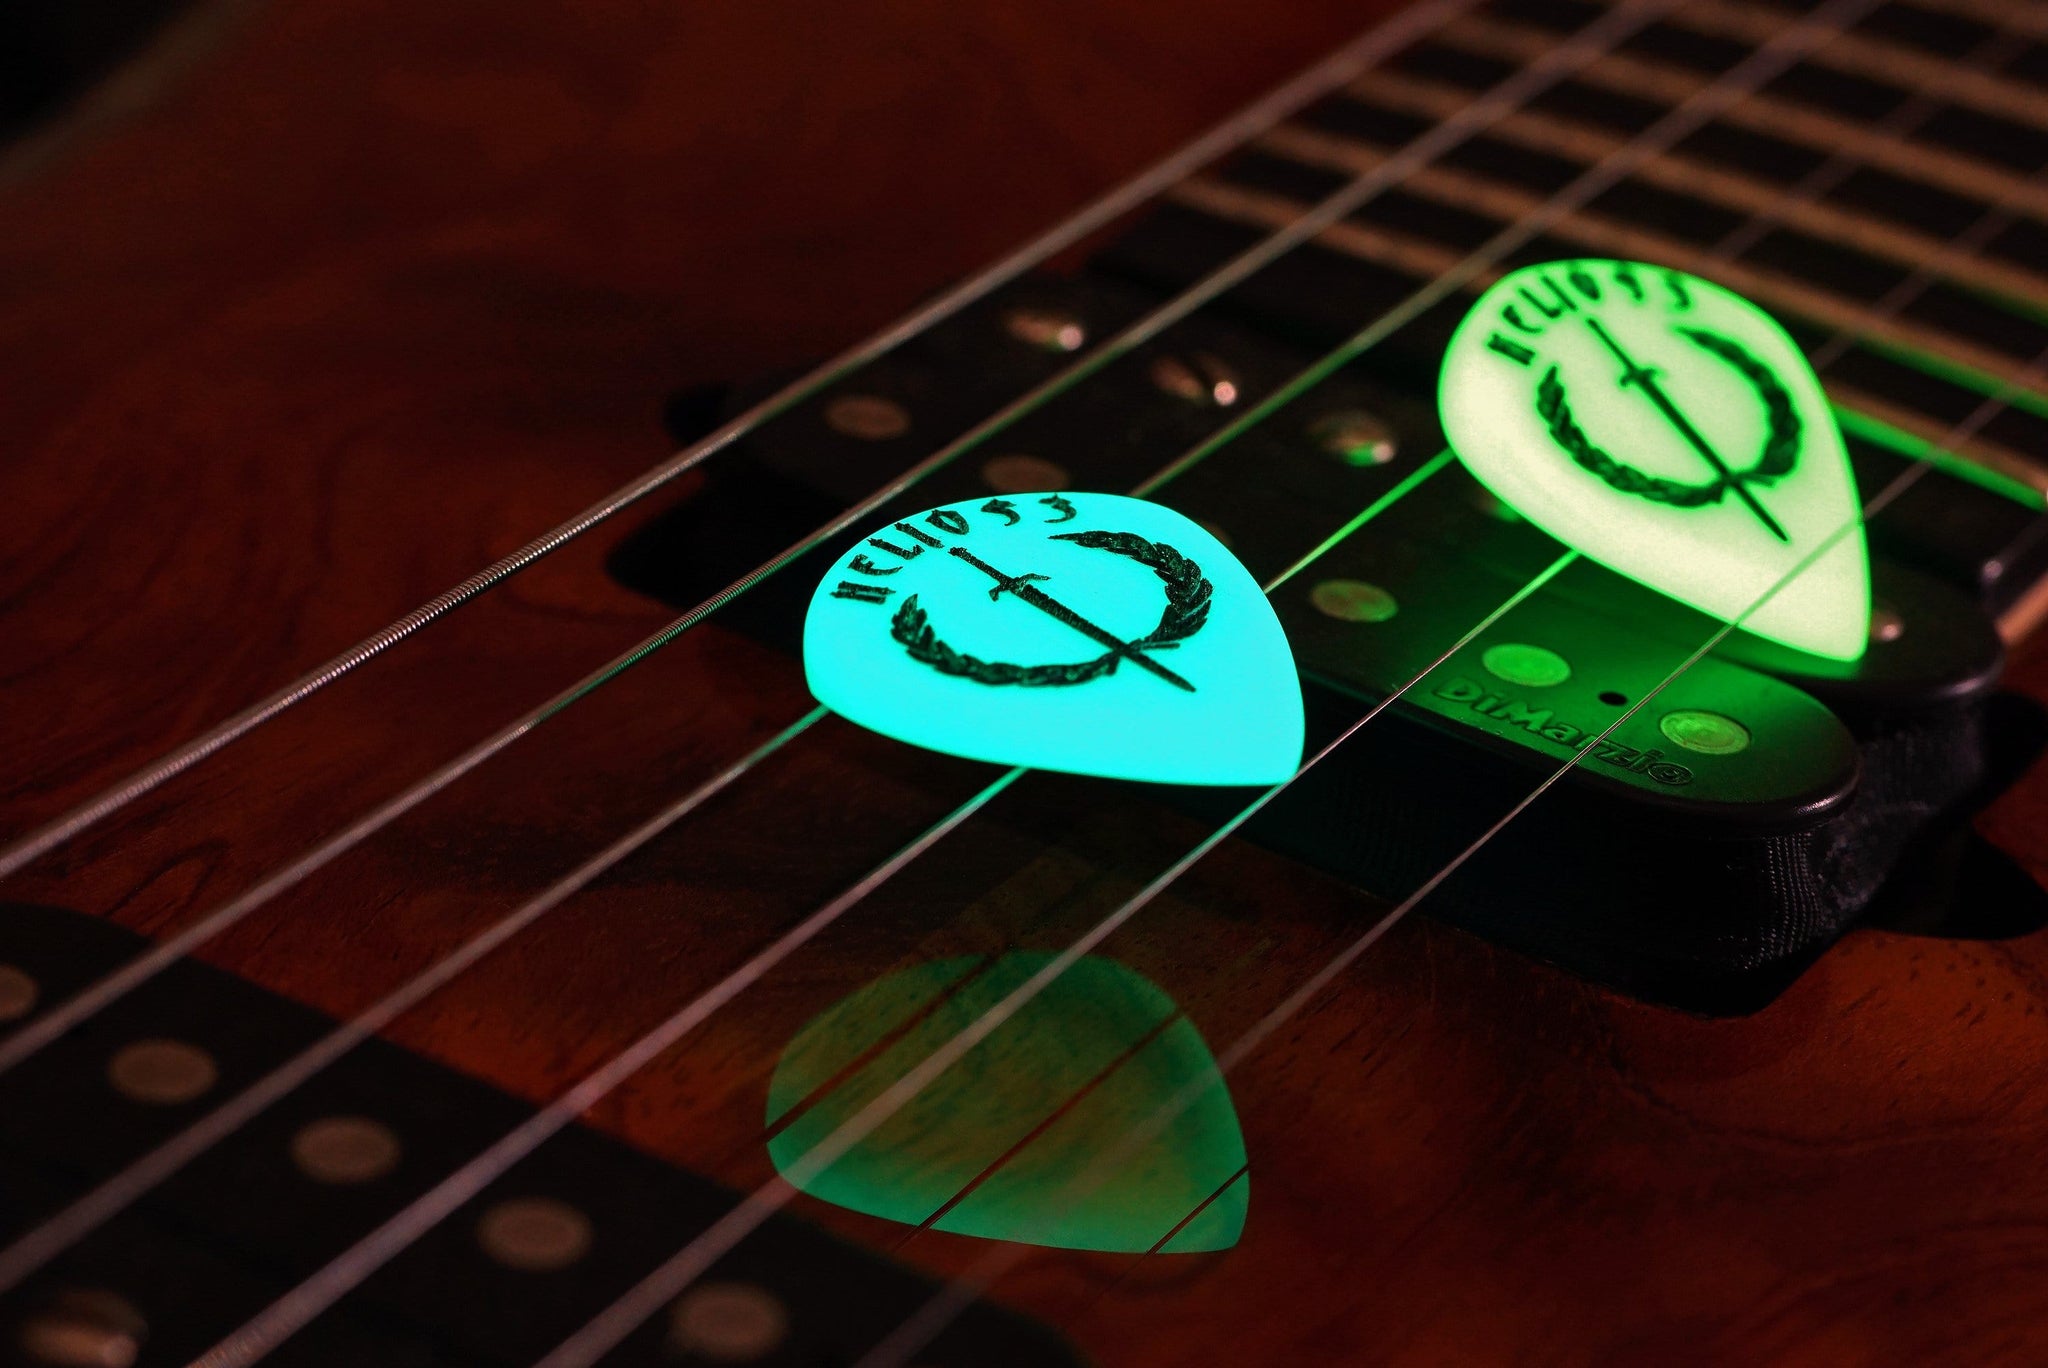 LED Luminous Pick Guitar Pick Wooden Guitar Electric Guitar Pick